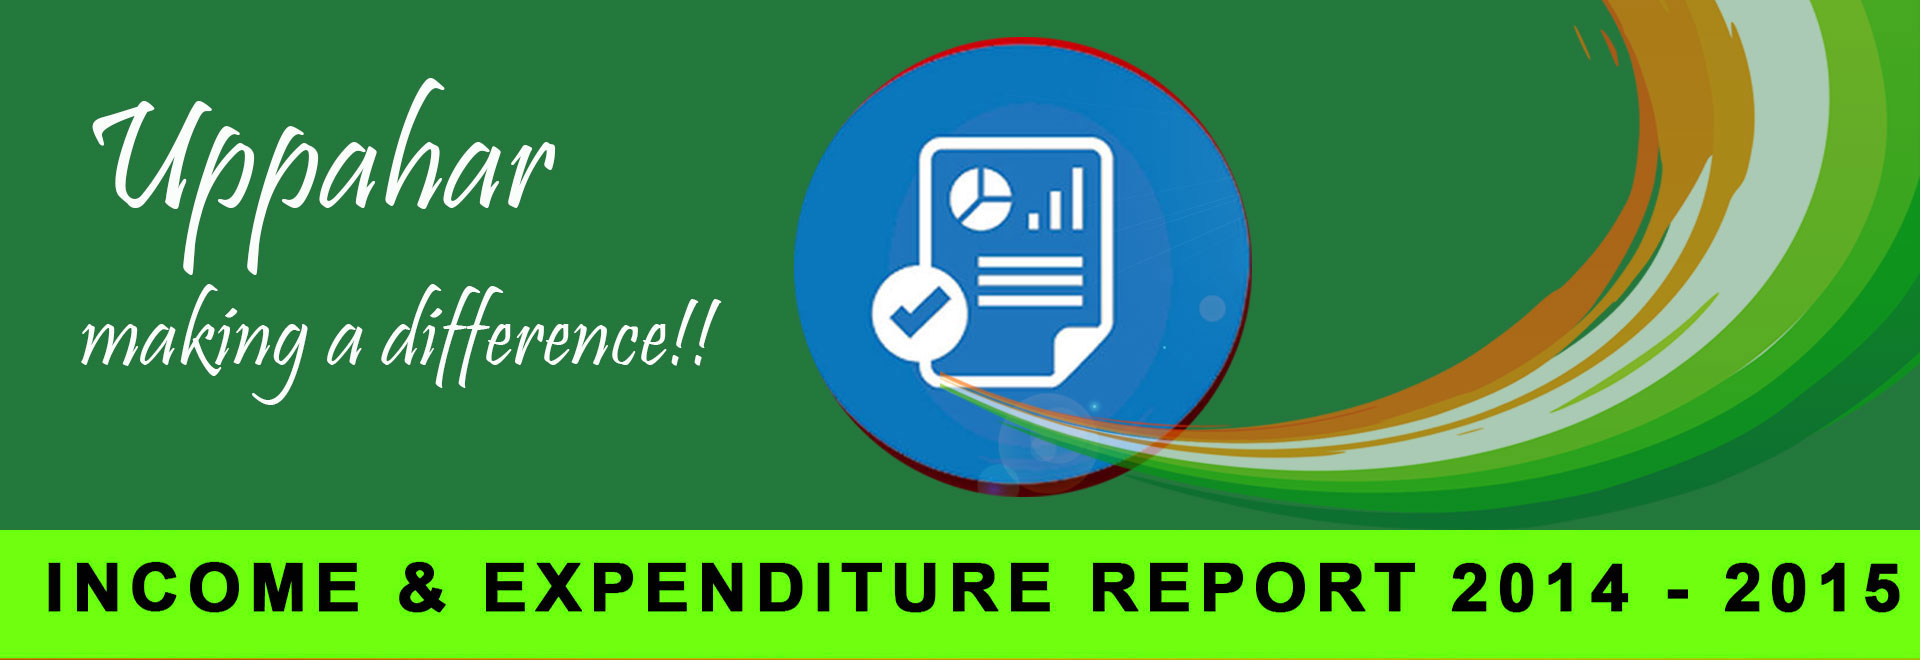 Audit Report 2014 - 2015